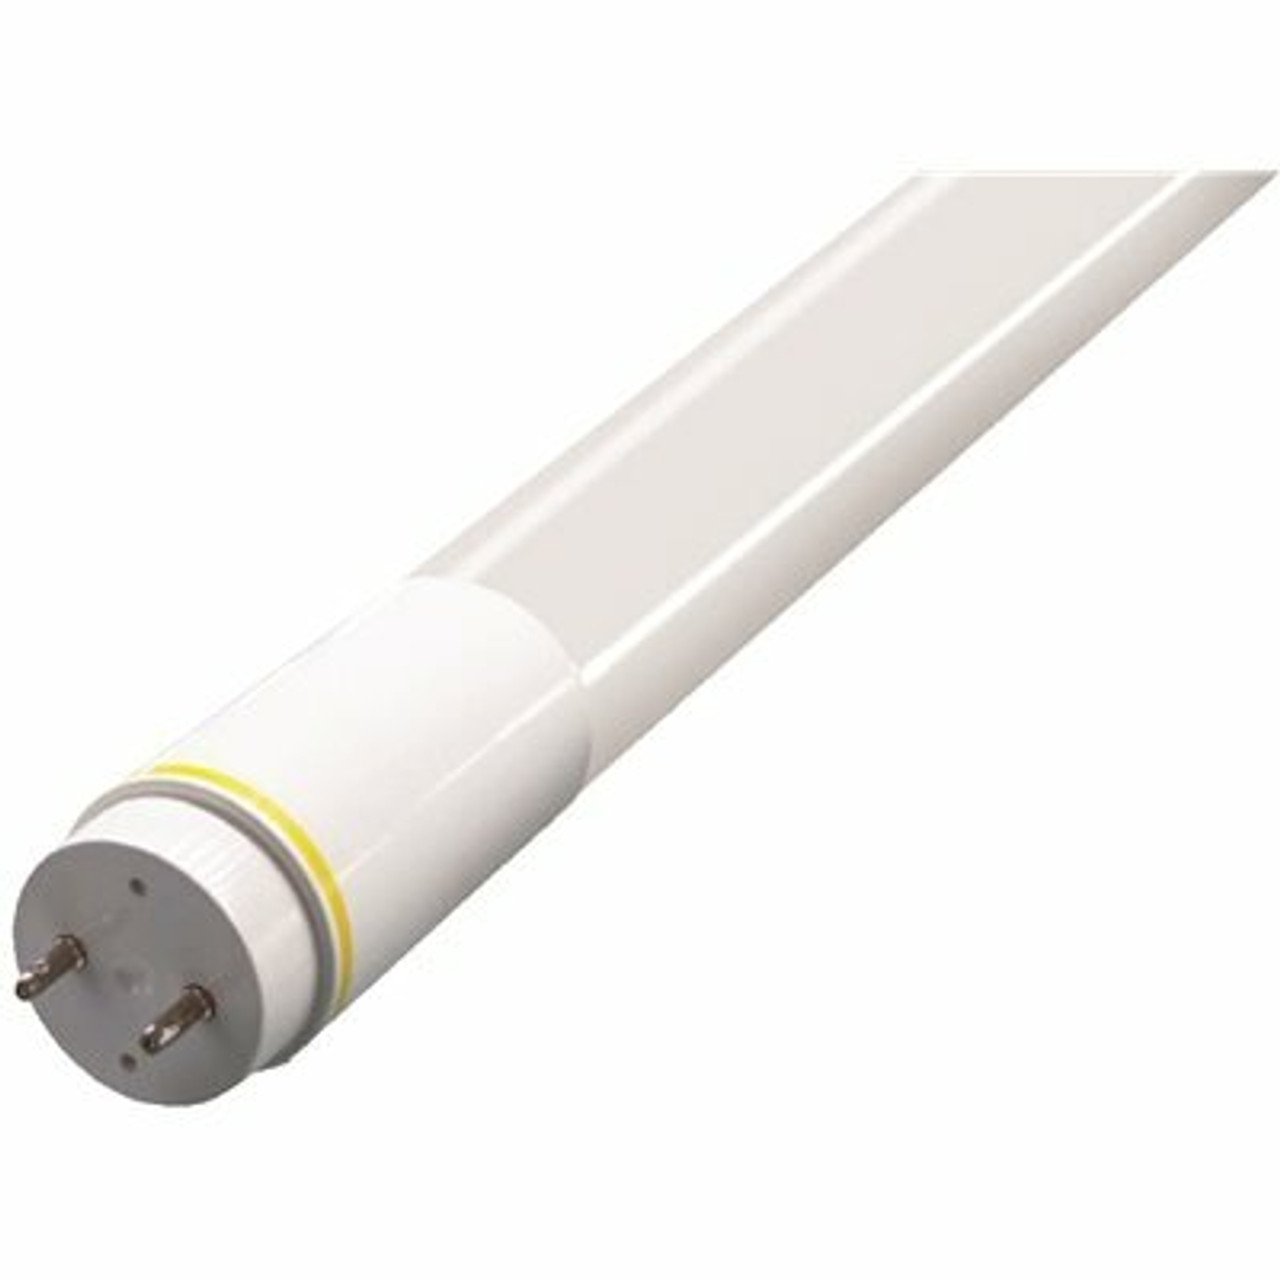 17-Watt Equivalent 2 Ft. Linear T8 Led Tube Light Bulb Non-Dimmable Bypass Type B Cool White 4000K (25-Pack)